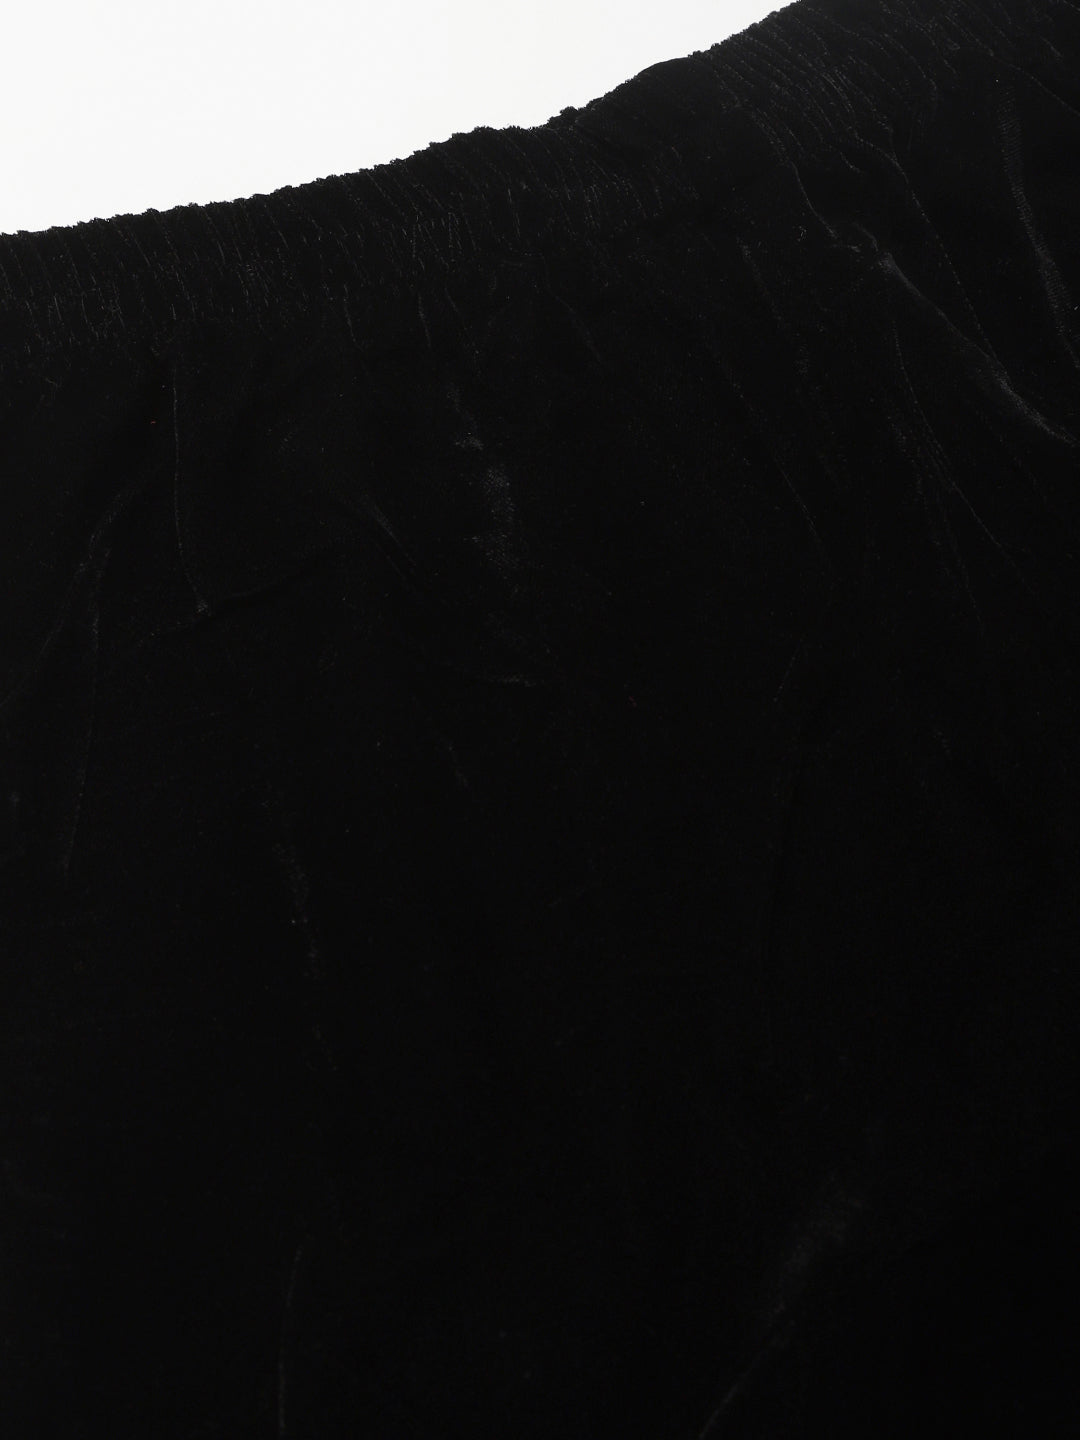 Cation Black Velvet Night Suit